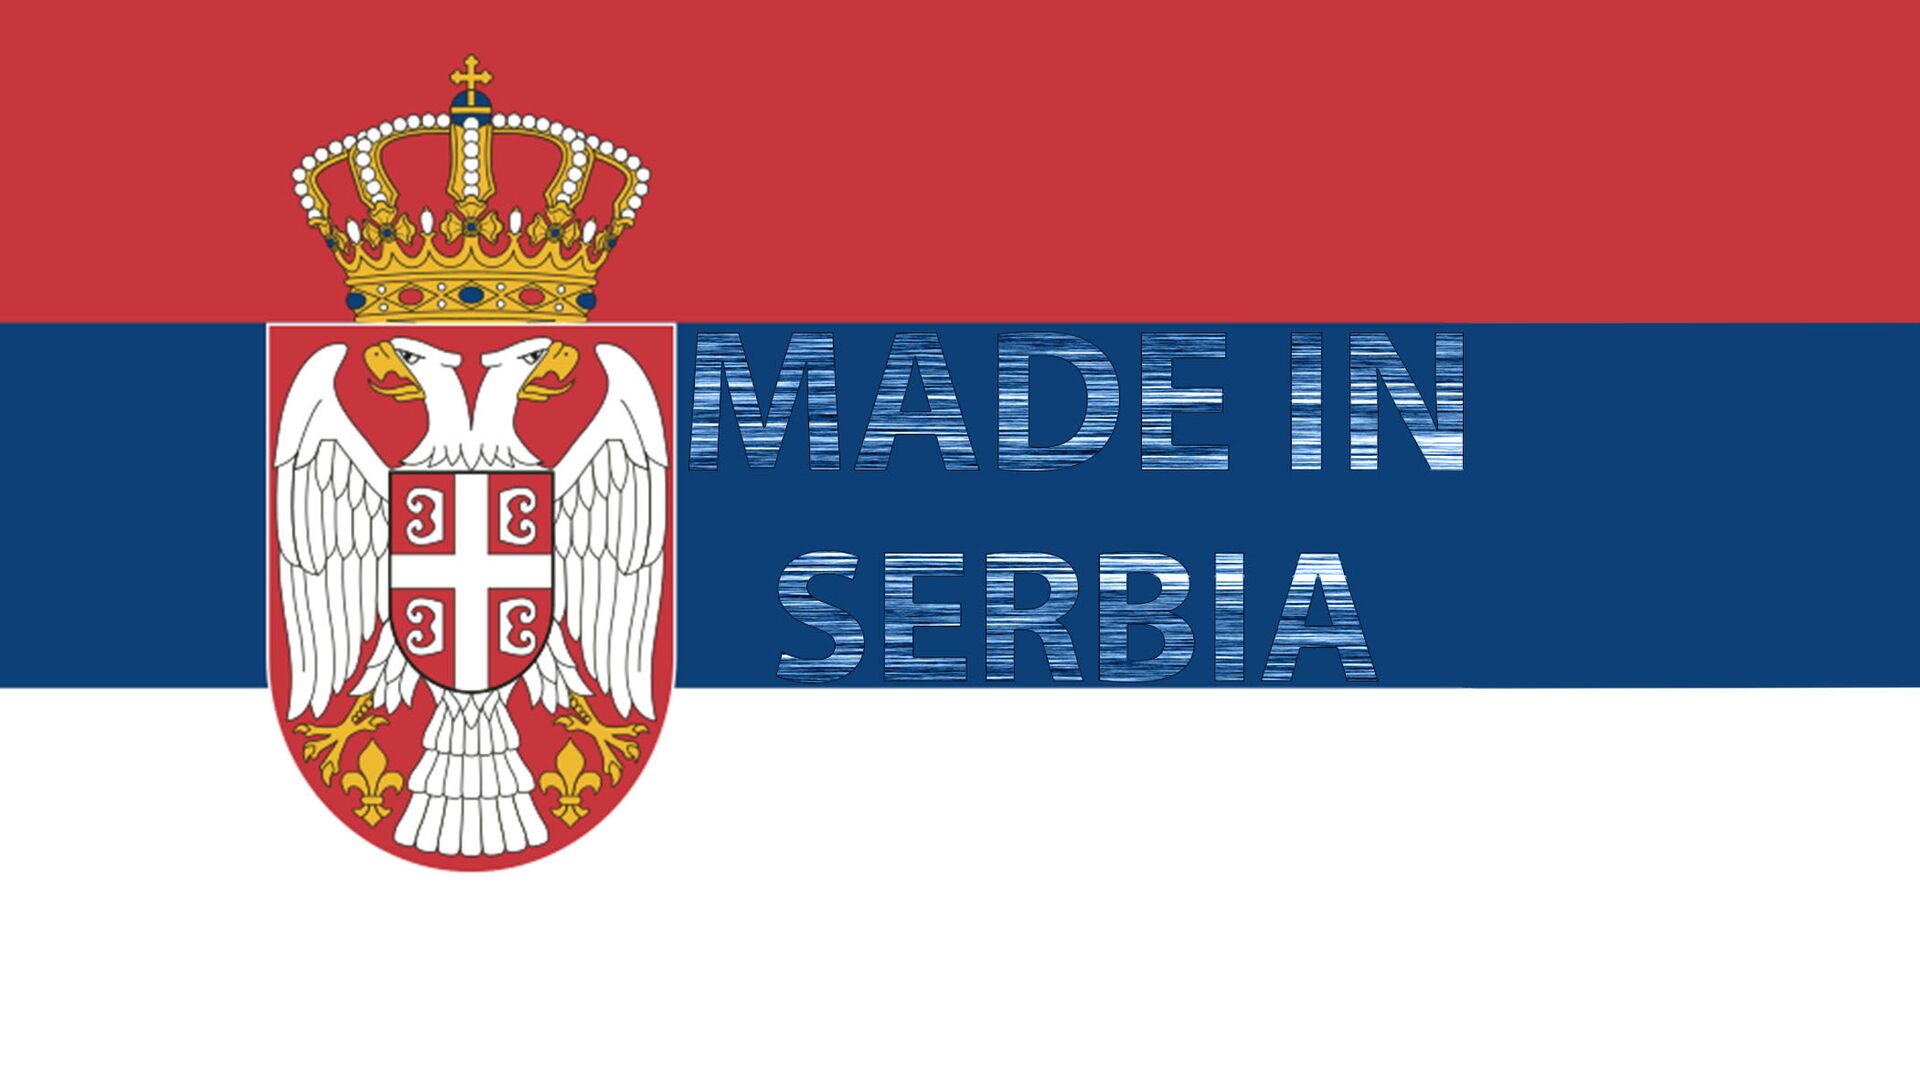 Proizvedeno u Srbiji - Sputnik Srbija, 1920, 13.08.2021